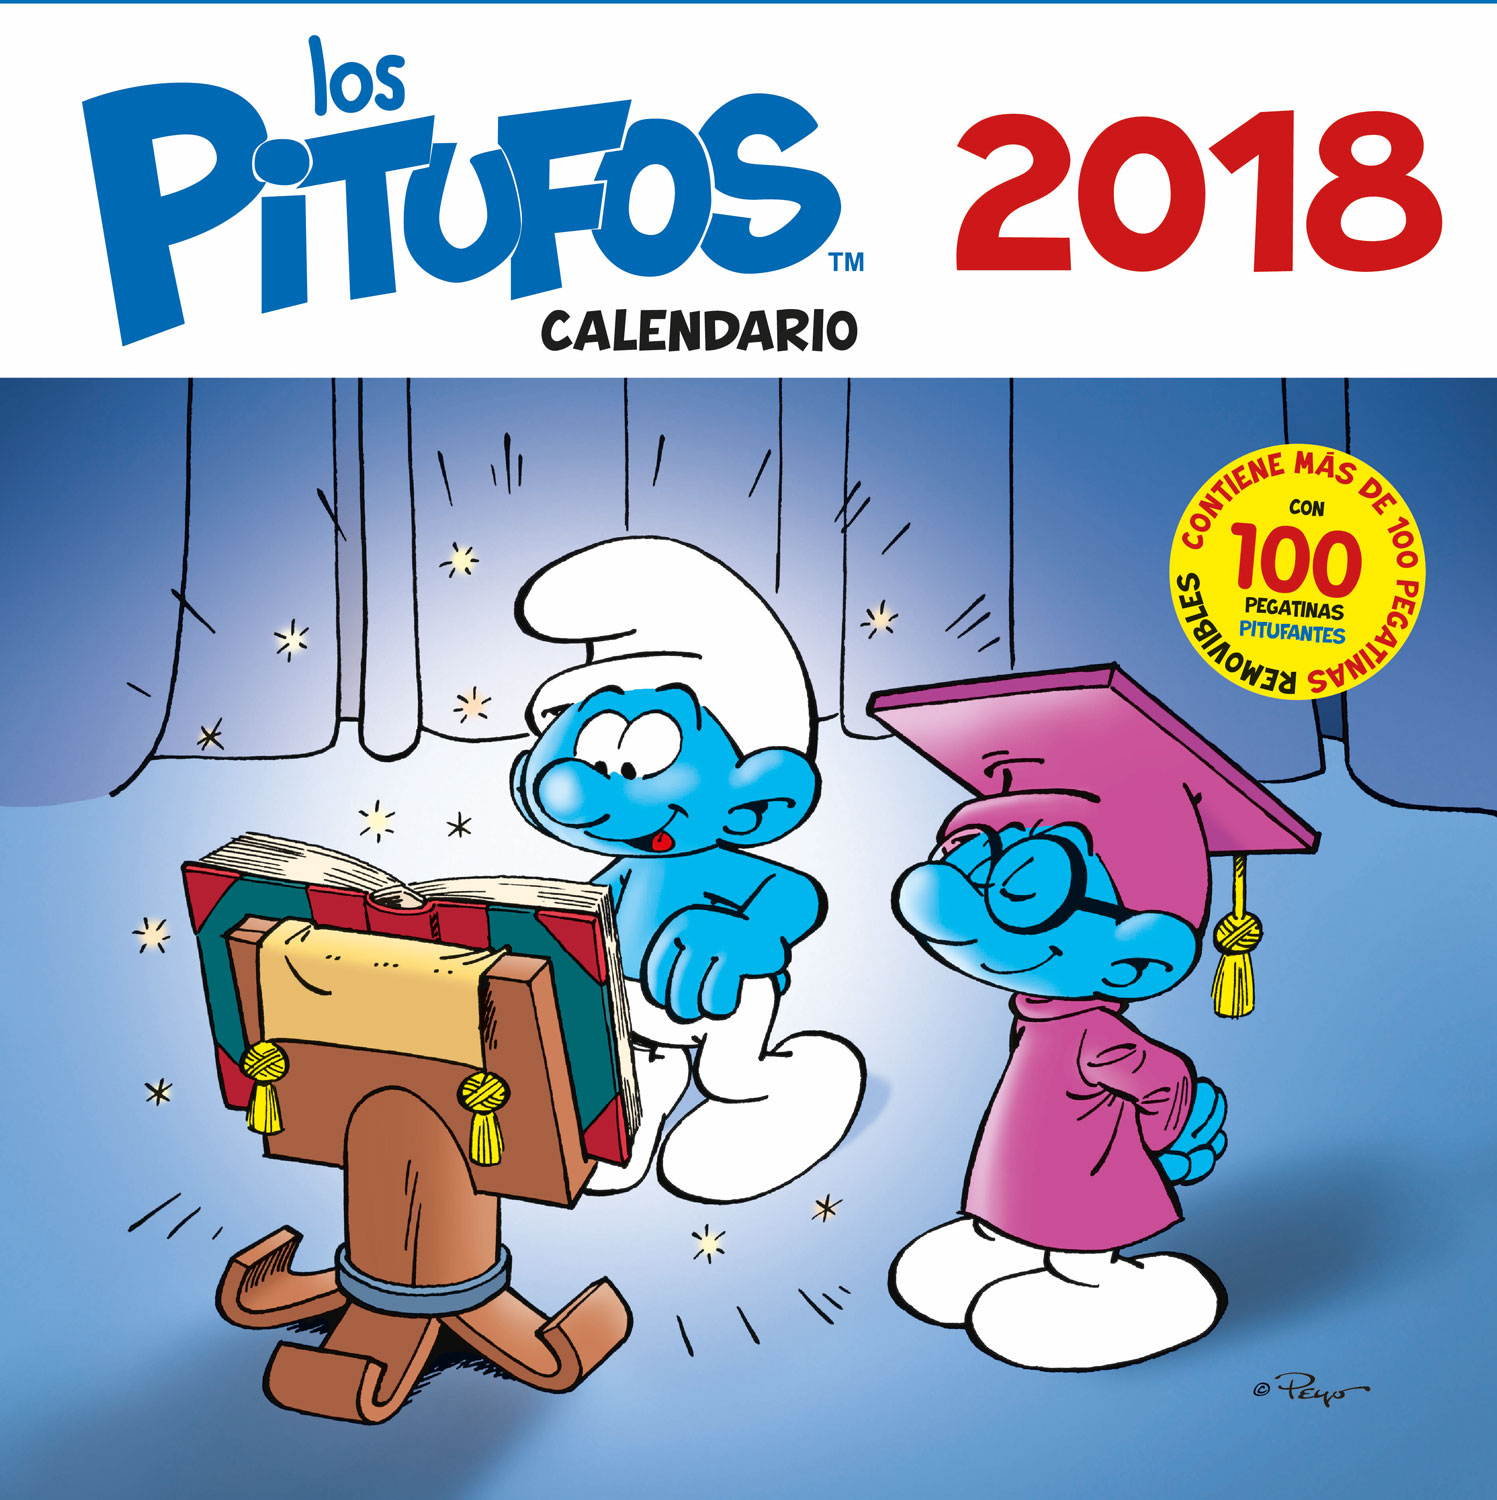 Los Pitufos. Calendario 2018 «Con más de 100 pegatinas pitufantes»